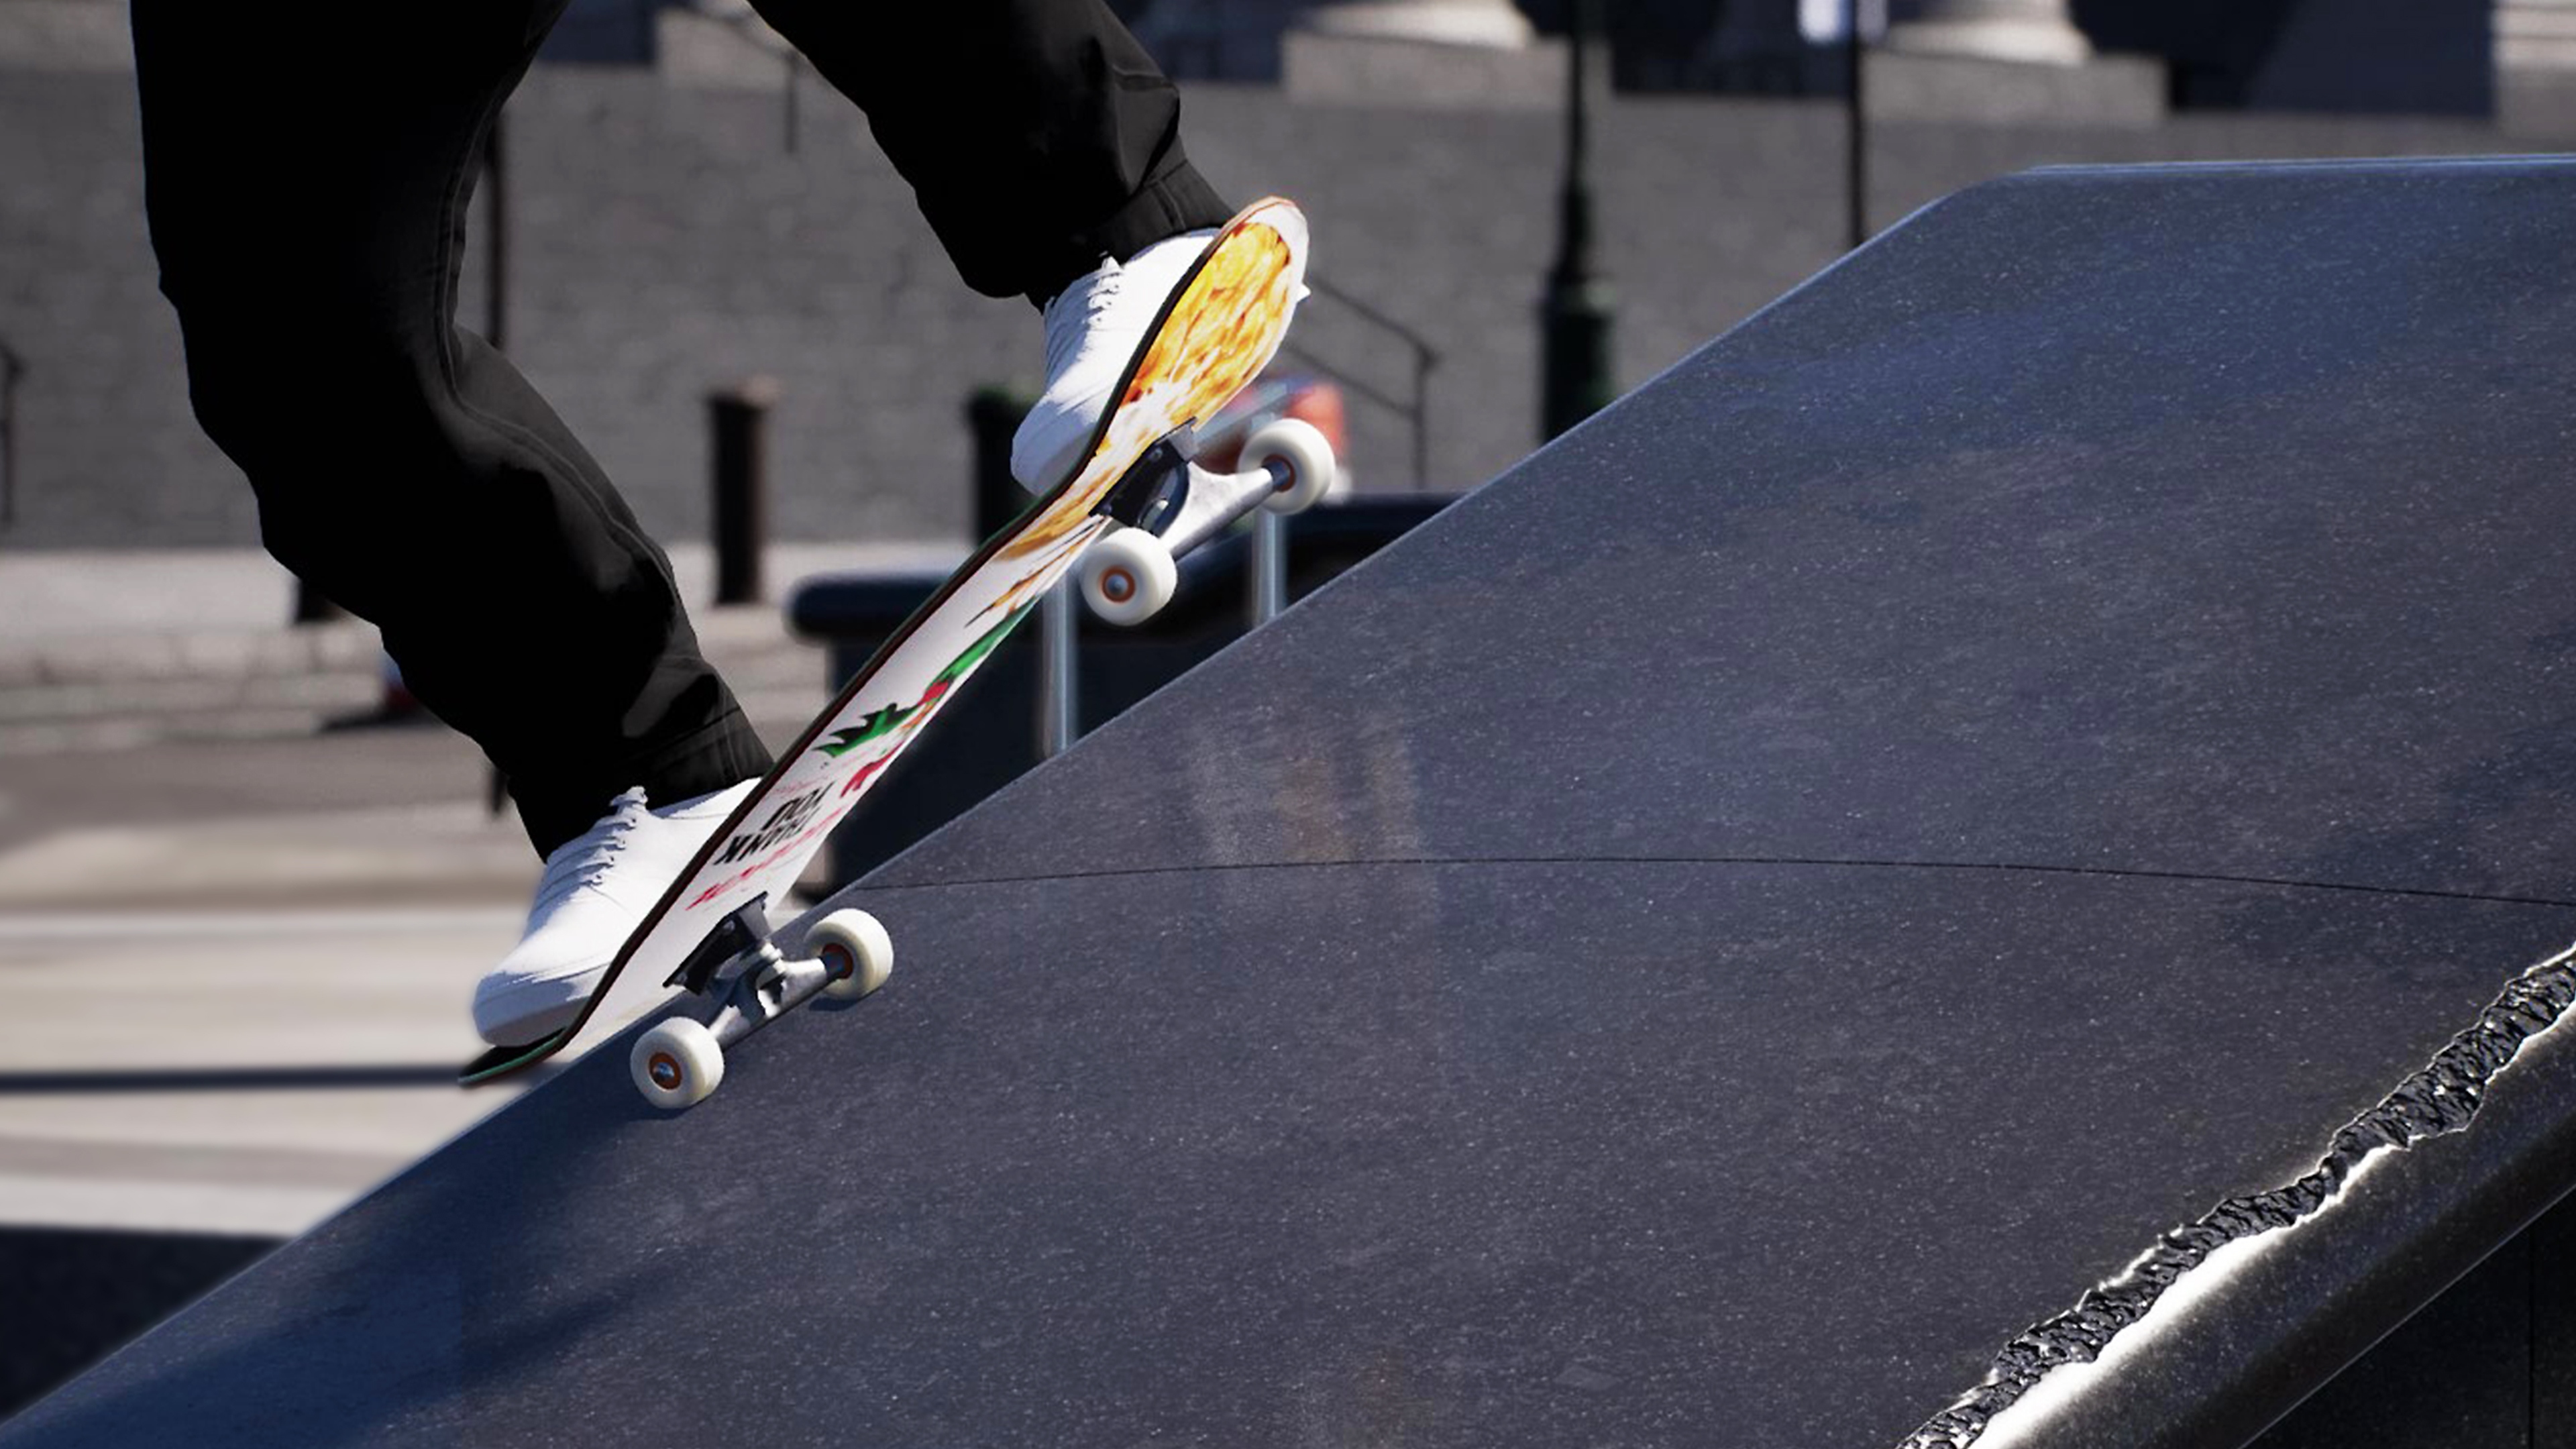 Session: Skate Sim - Istantanea della schermata che mostra uno skater che scivola su una sporgenza